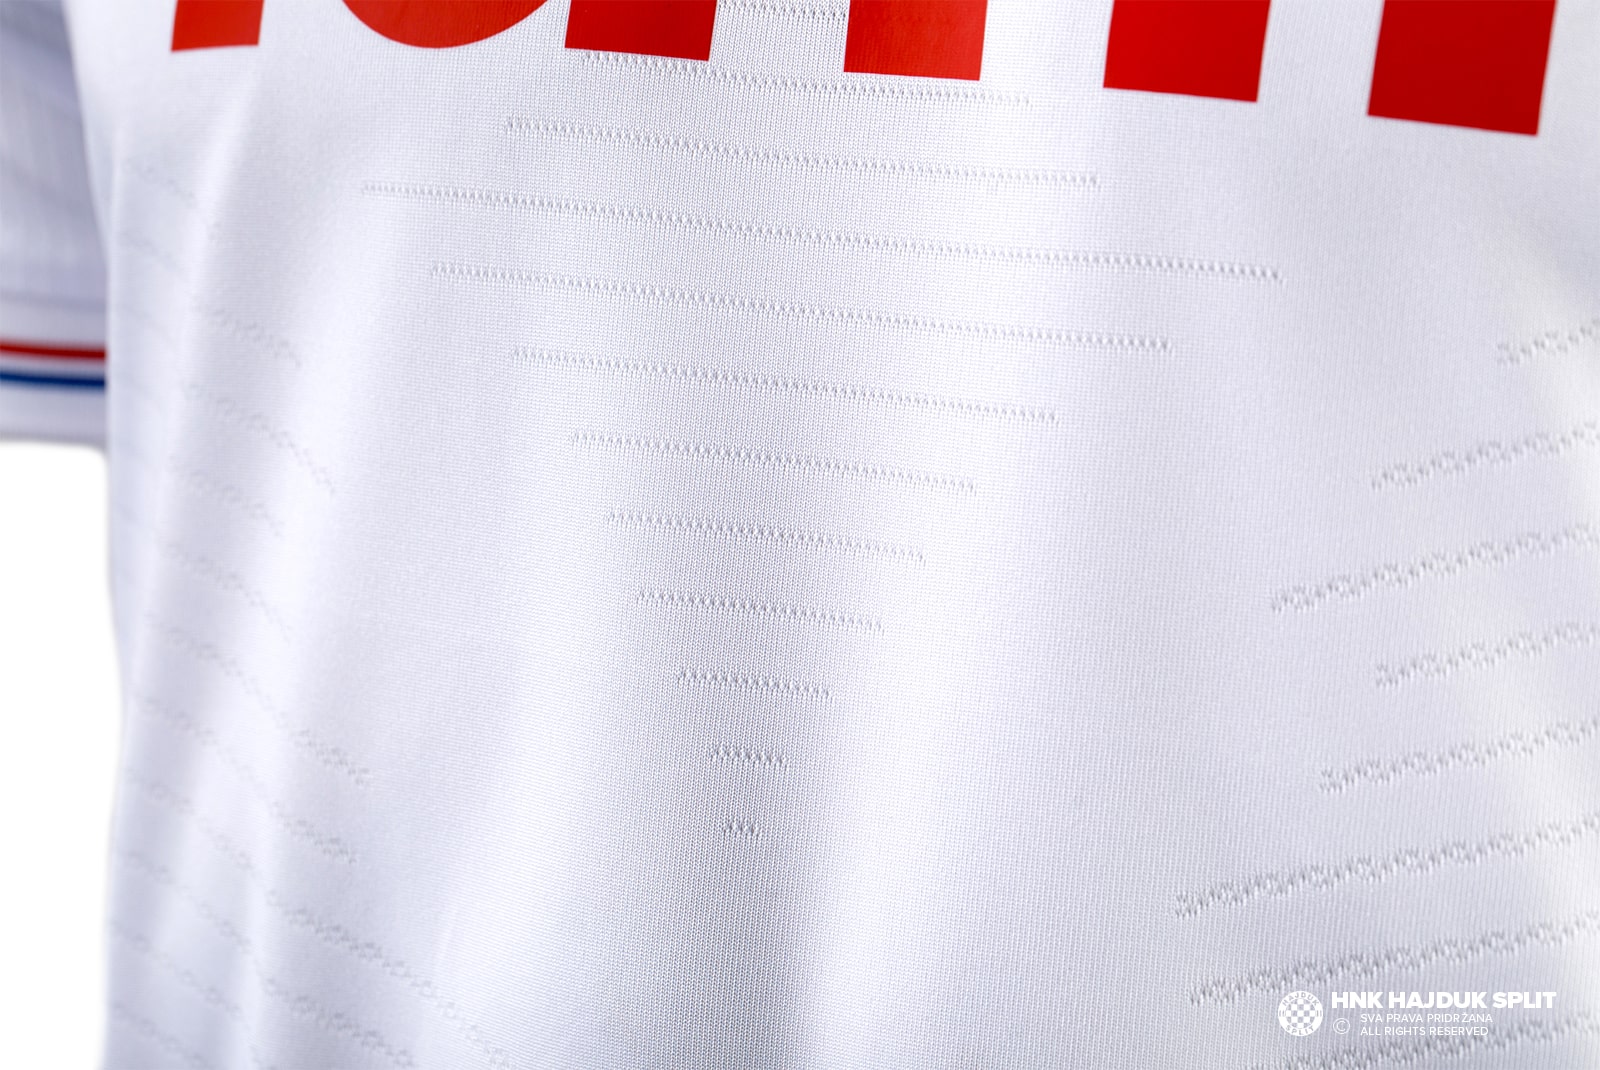 Hajduk Split 21-22 Away Kit Released - Footy Headlines